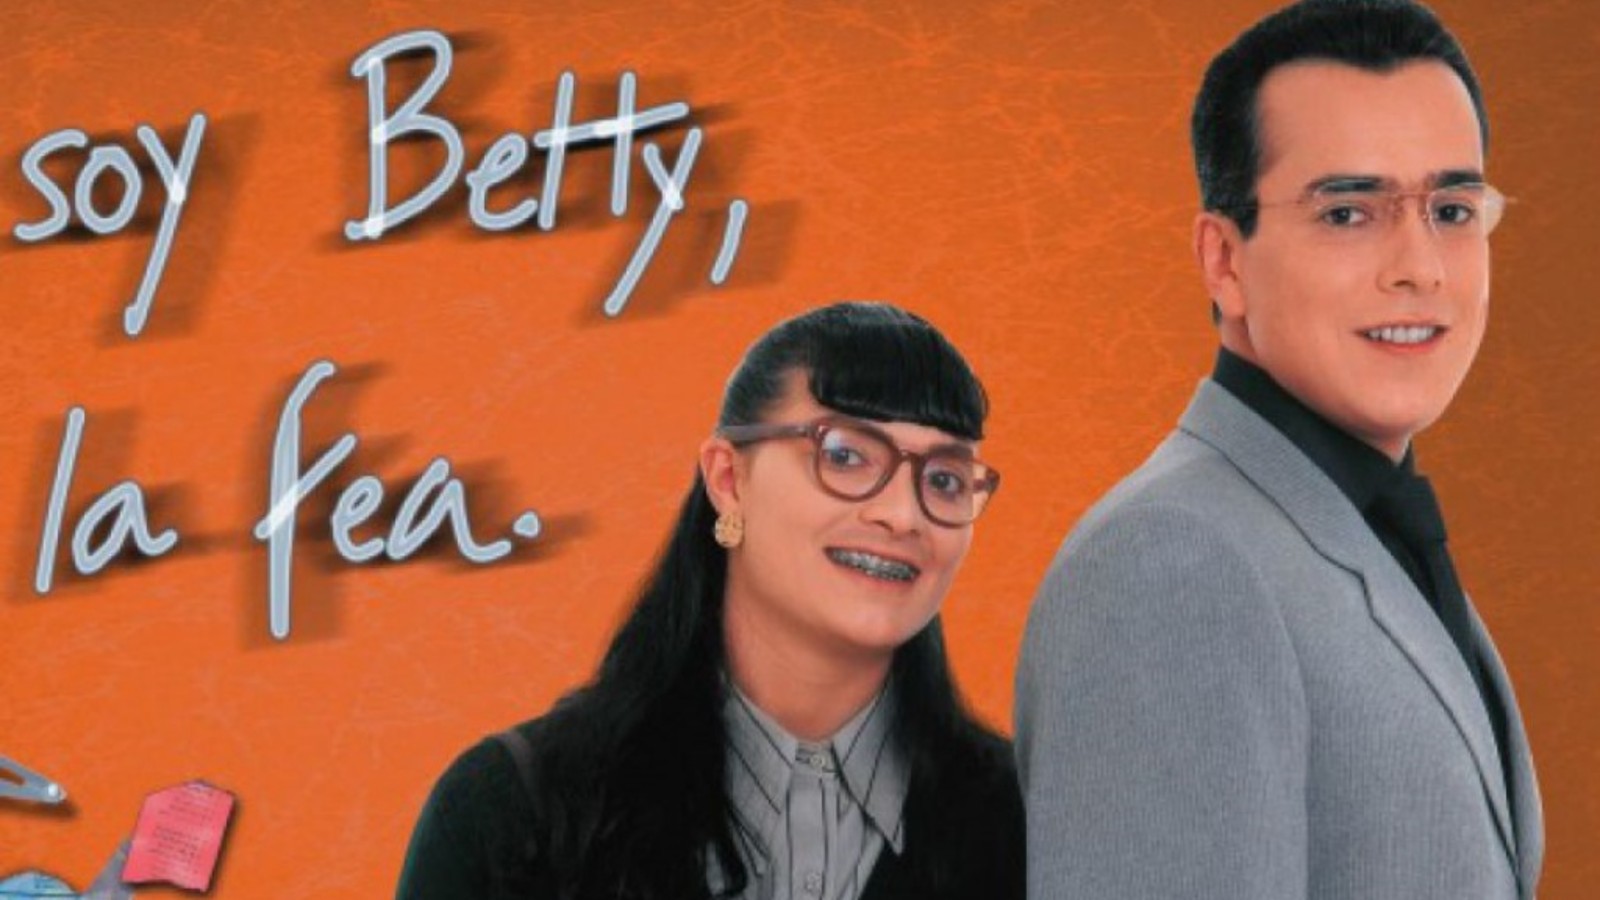 betty la fea recuento especial memes reflexiones 1 - Yo soy Betty, la fea